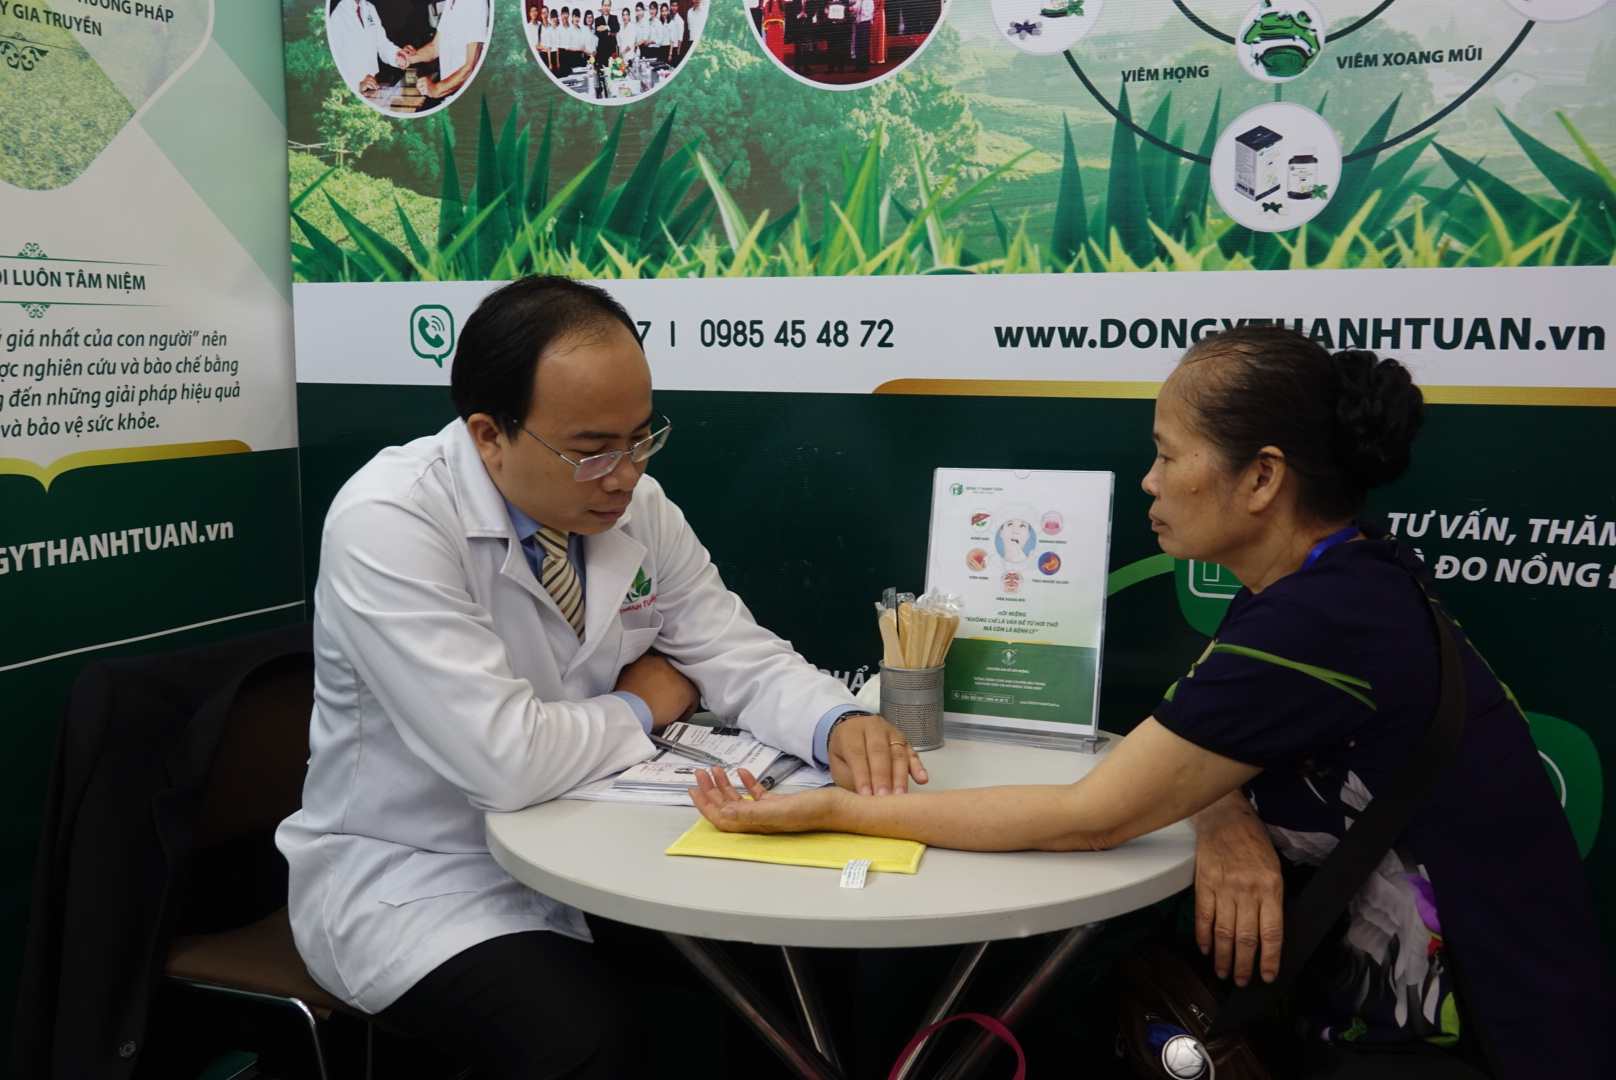 Thầy thuốc Nguyễn Thanh Tuấn chụp ảnh kỷ niệm cùng bệnh nhân